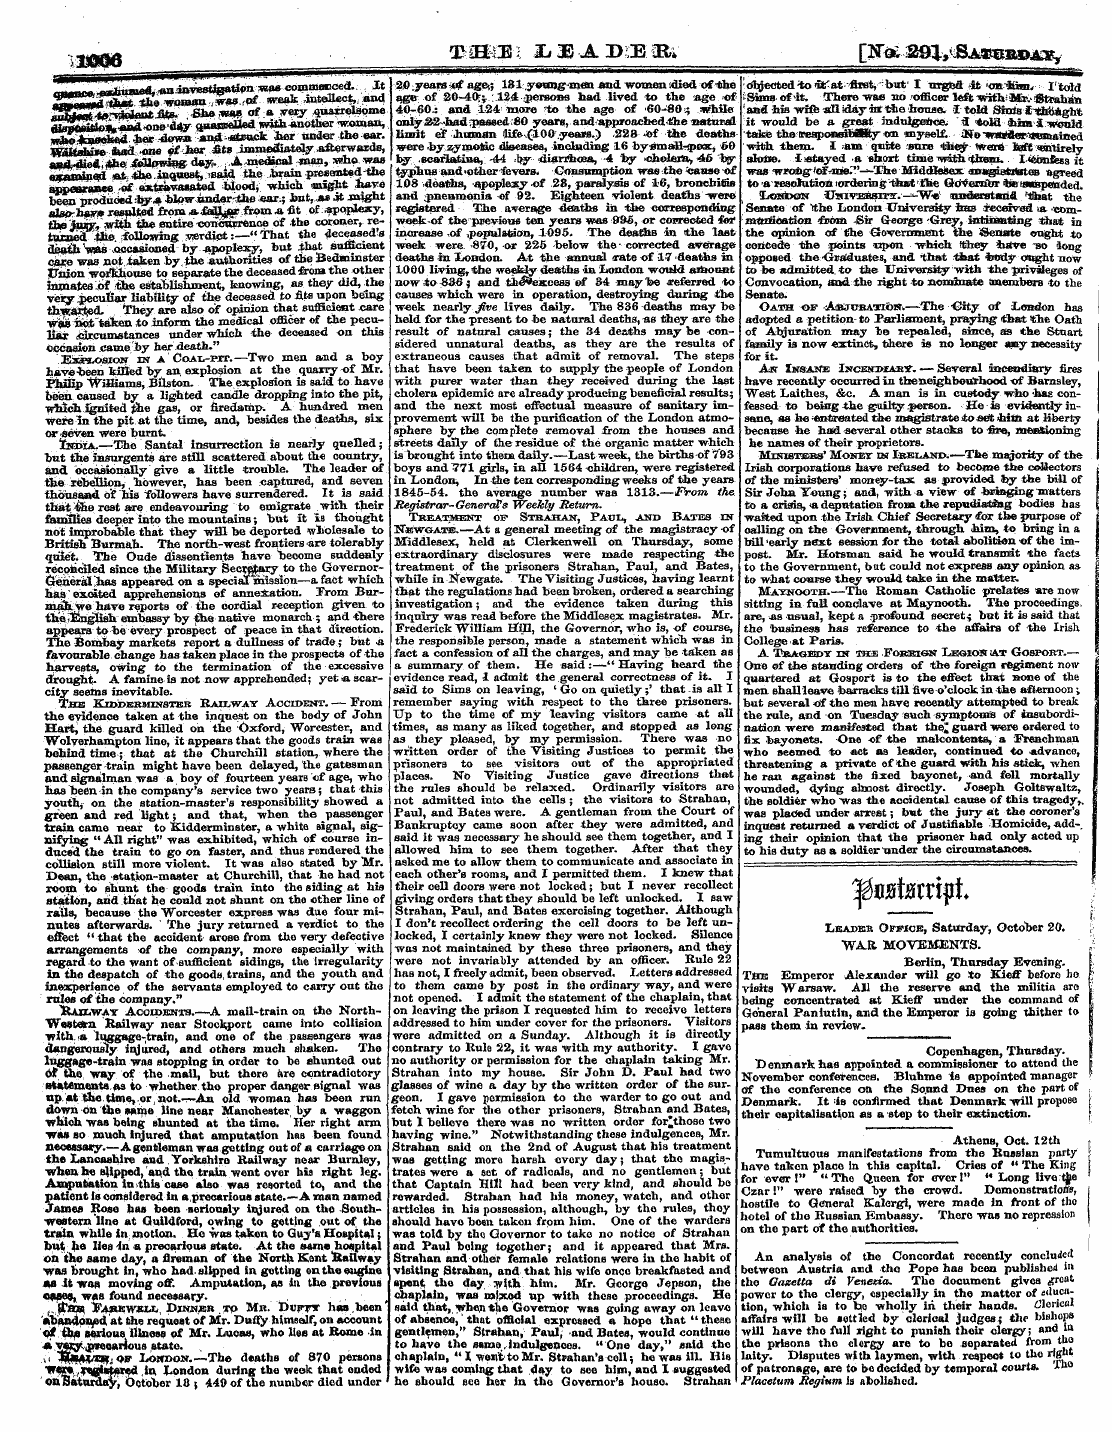 Leader (1850-1860): jS F Y, 2nd edition - {Jmq *Bmeq : L Zj Wa.T>Mib» [N<£ 291, Sa...